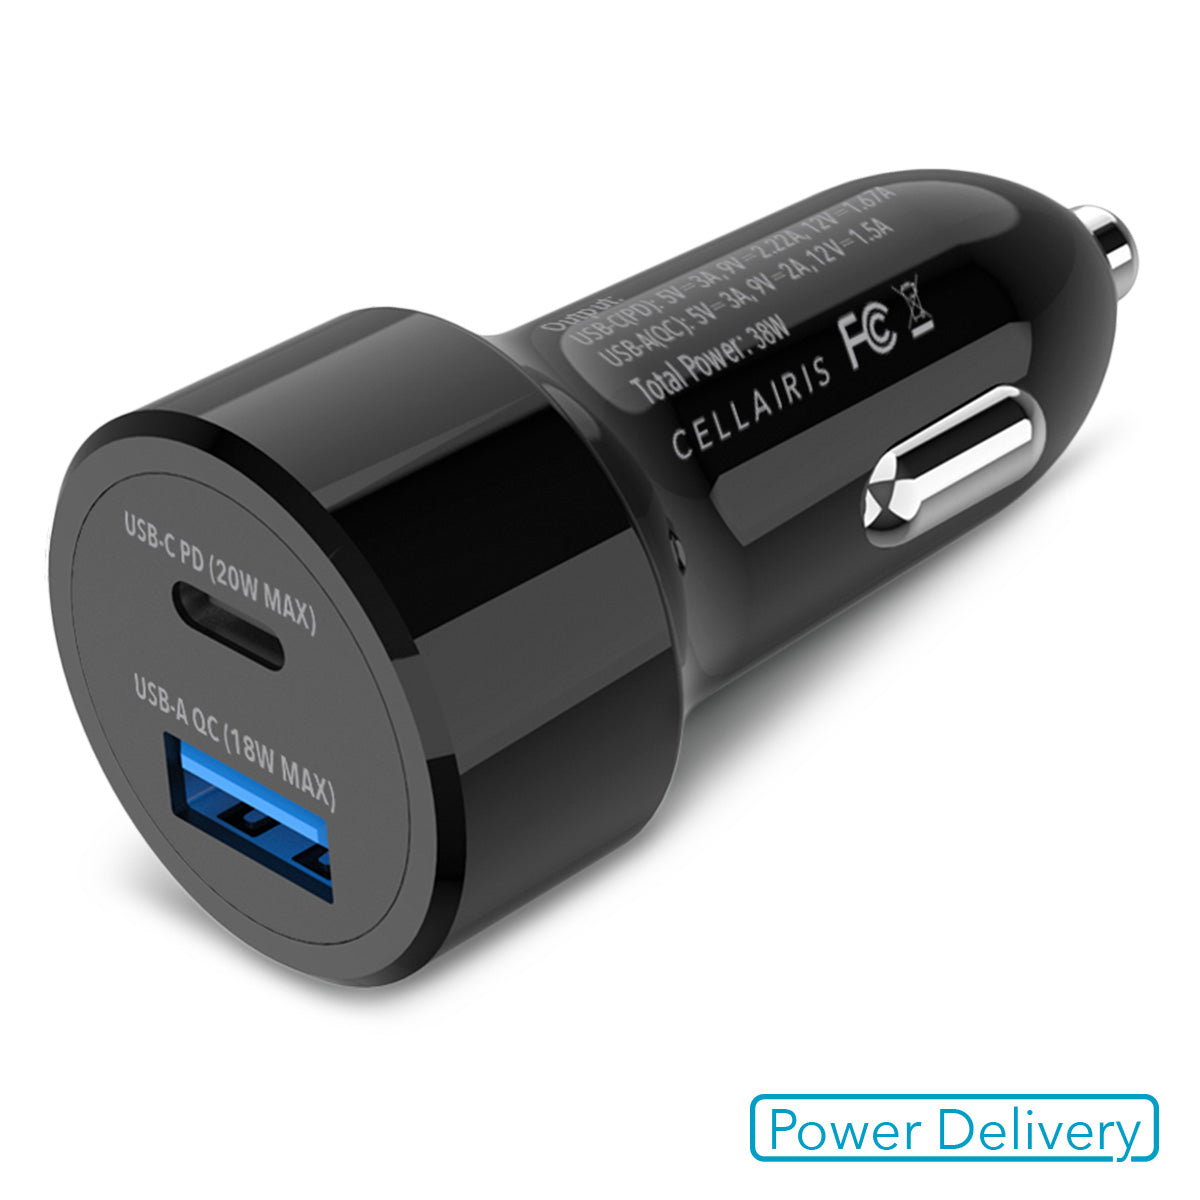 Cellairis Car Charger - Dual USB-A + USB-C 38W Black Power